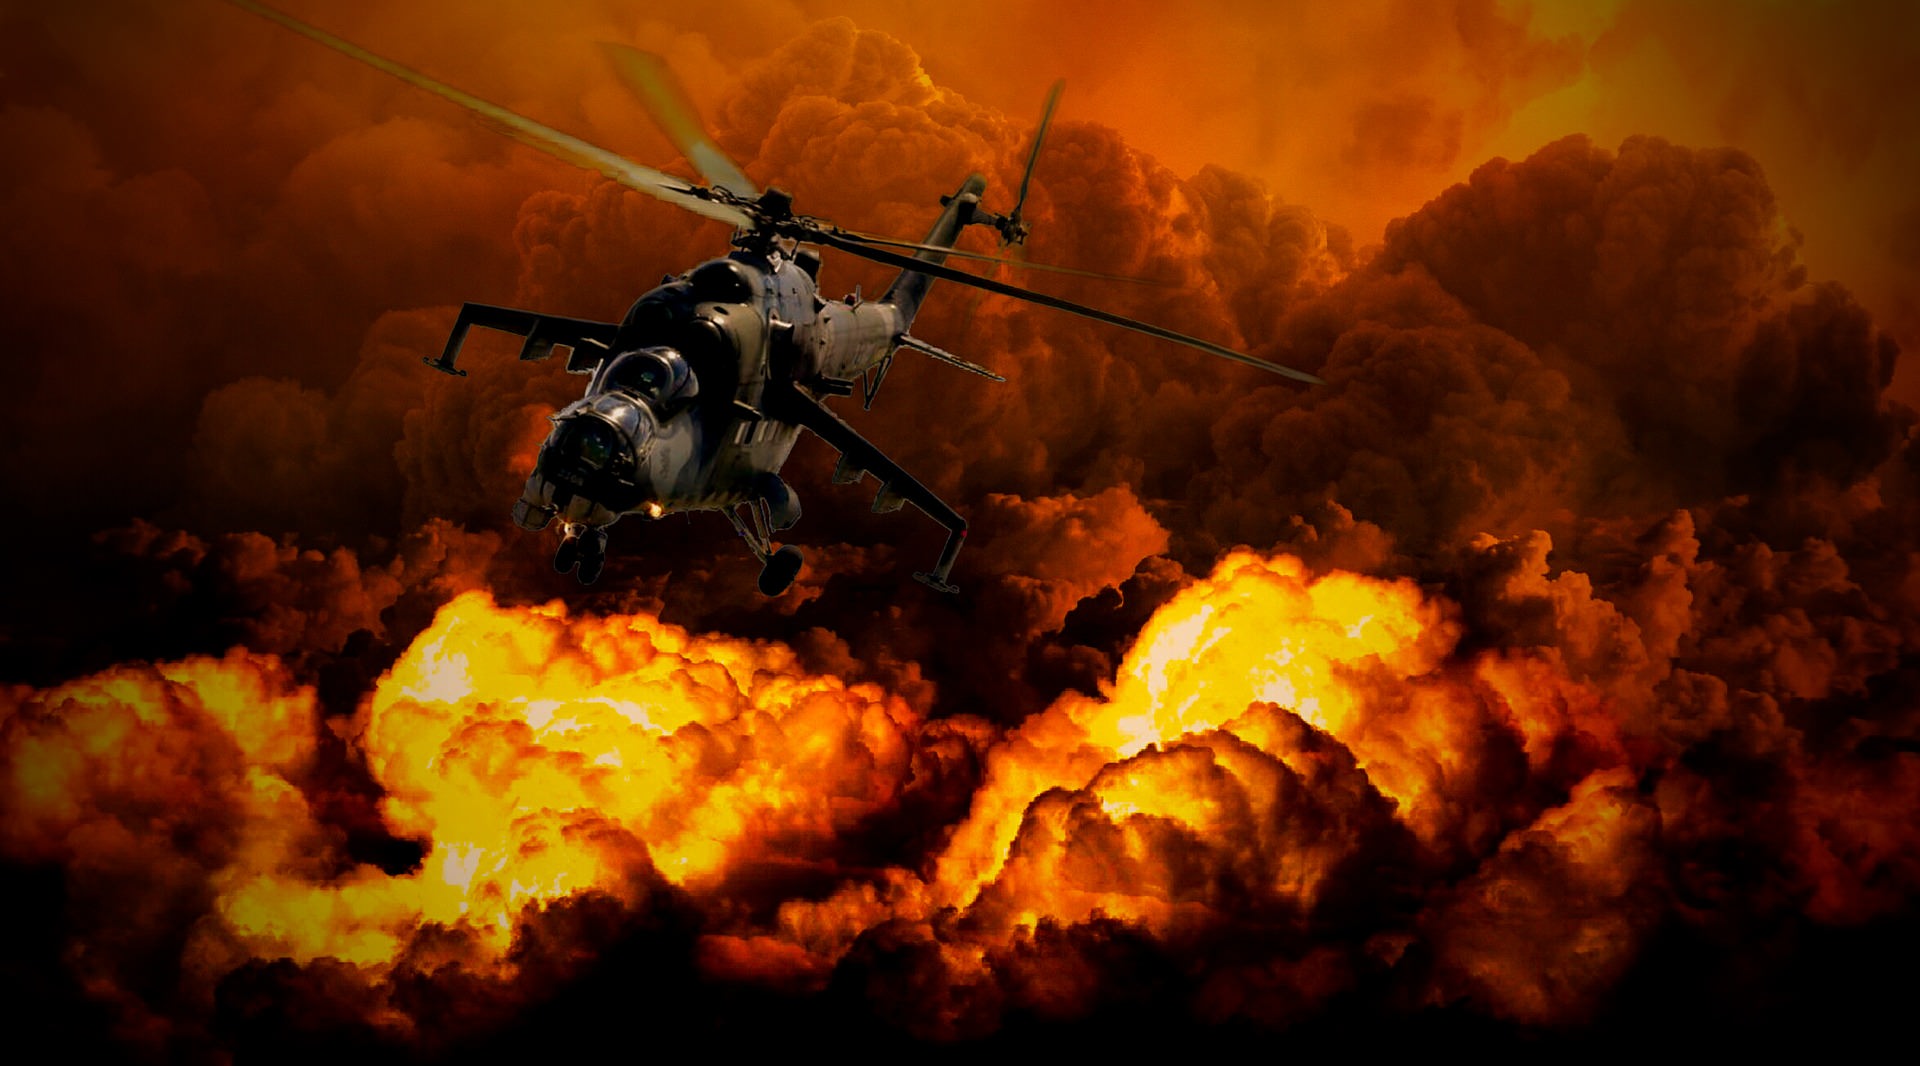 helikopter-rat-pixabay.jpg